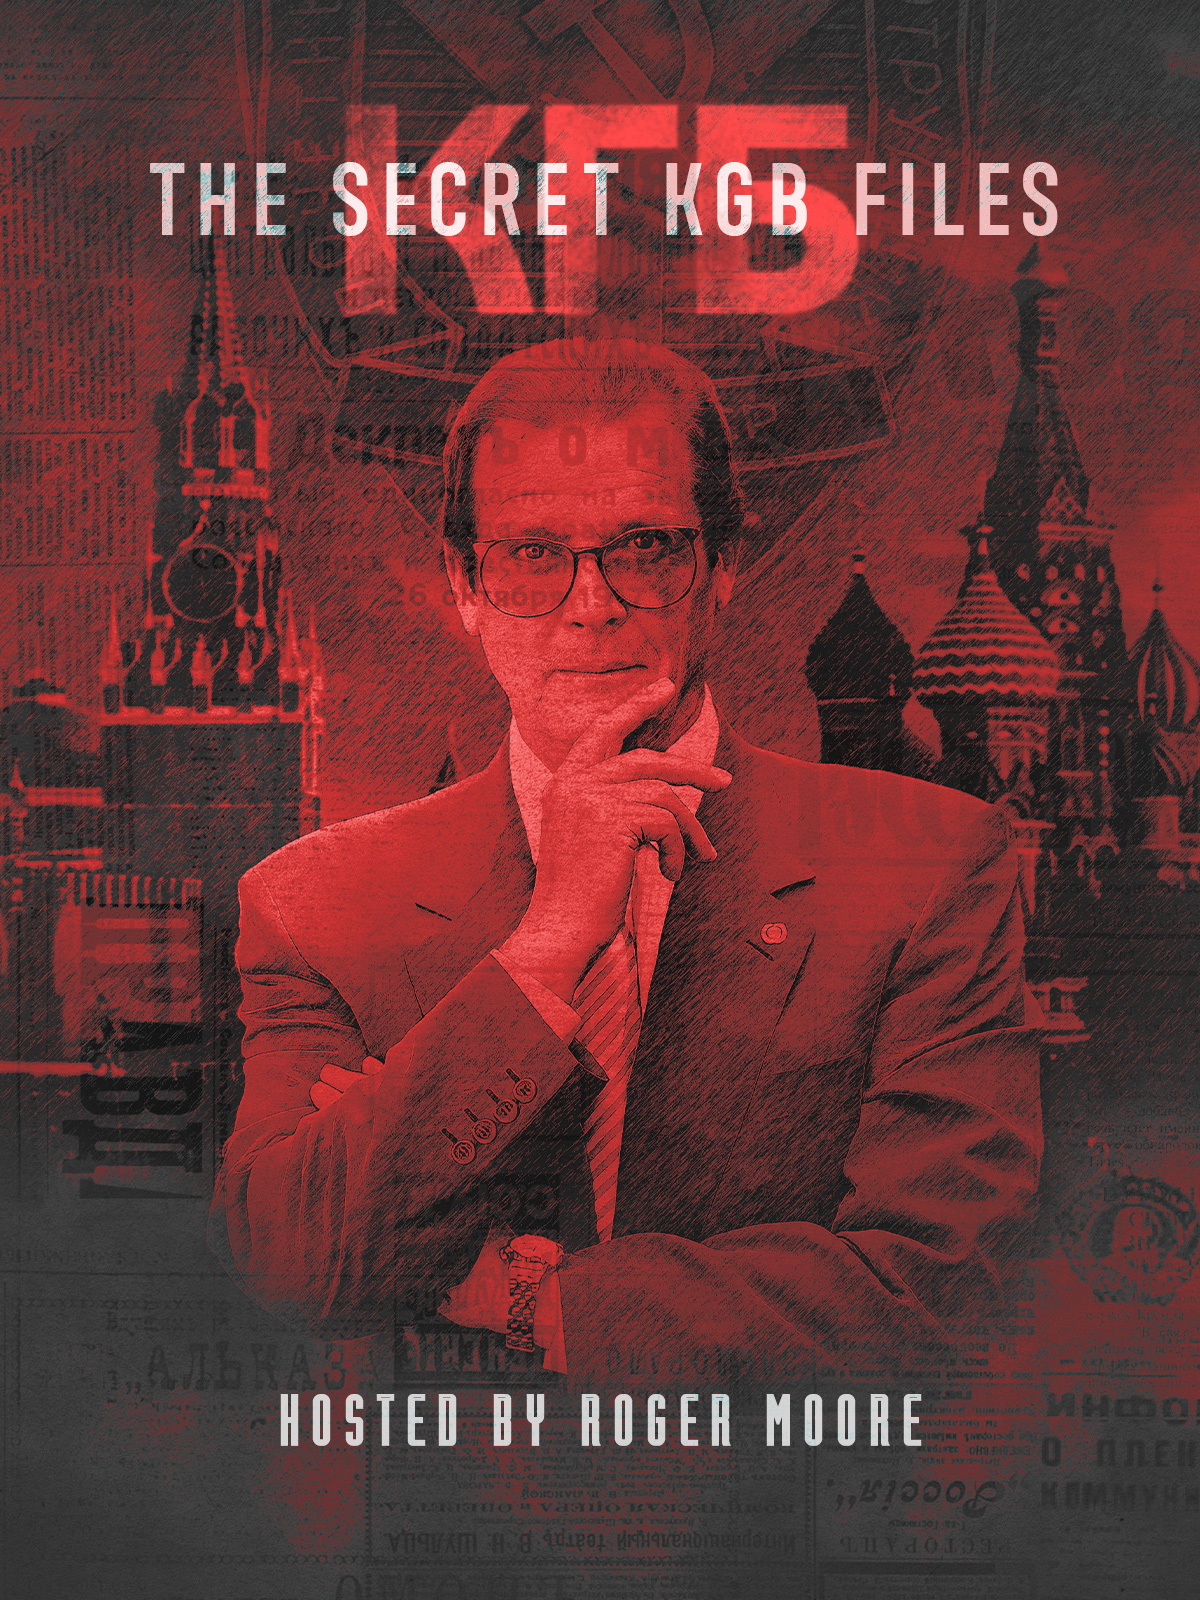 The Secret K.G.B. Files